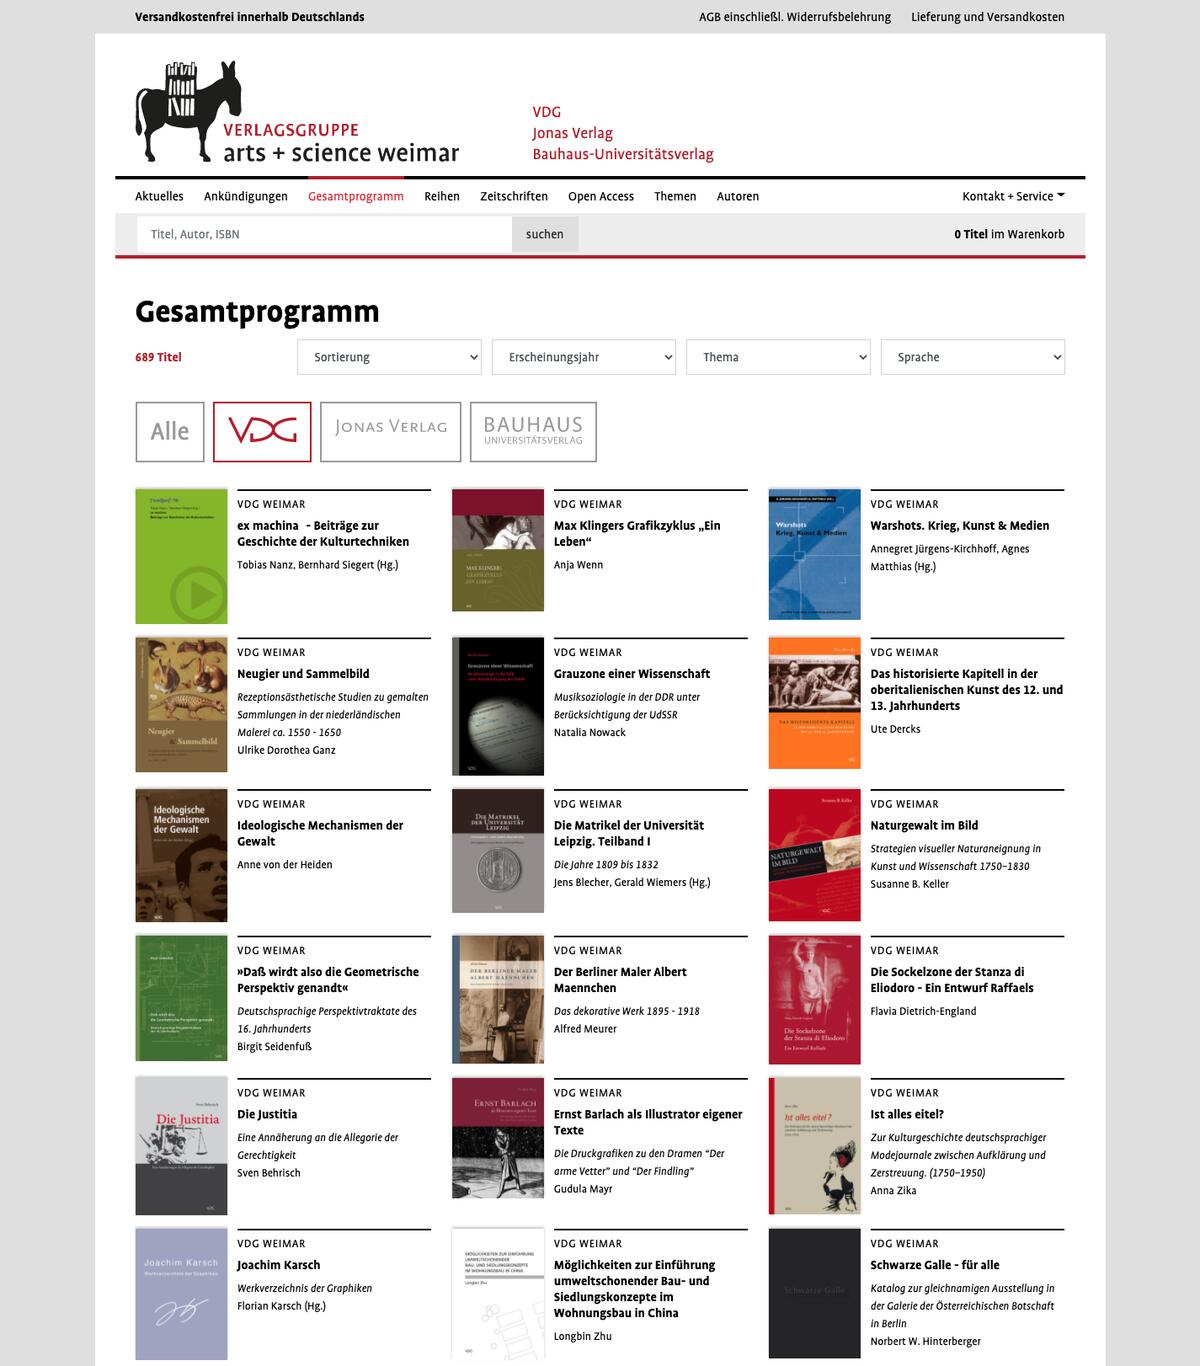 Website asw-verlage.de: Suchergebnis im Gesamtprogramm, Kohlhaas & Kohlhaas